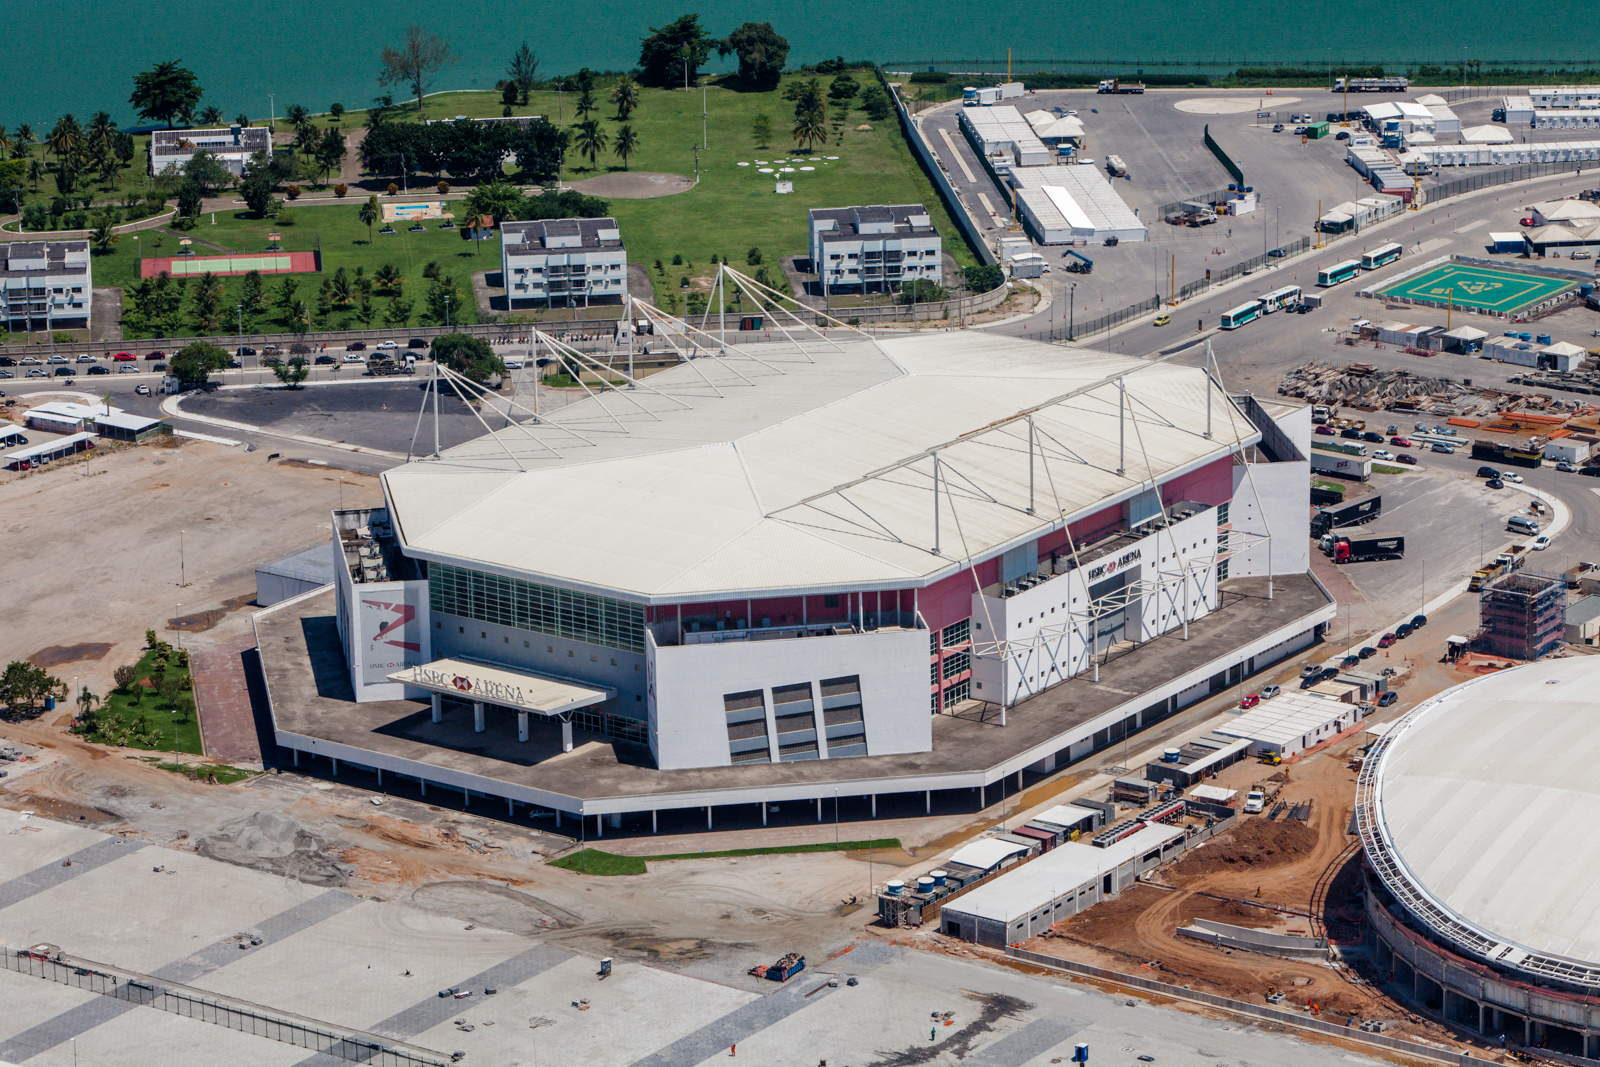 HSBC Arena Arena Olímpica do Rio Rio de Janeiro Olympic Stadium 2016 Brasil Brazil